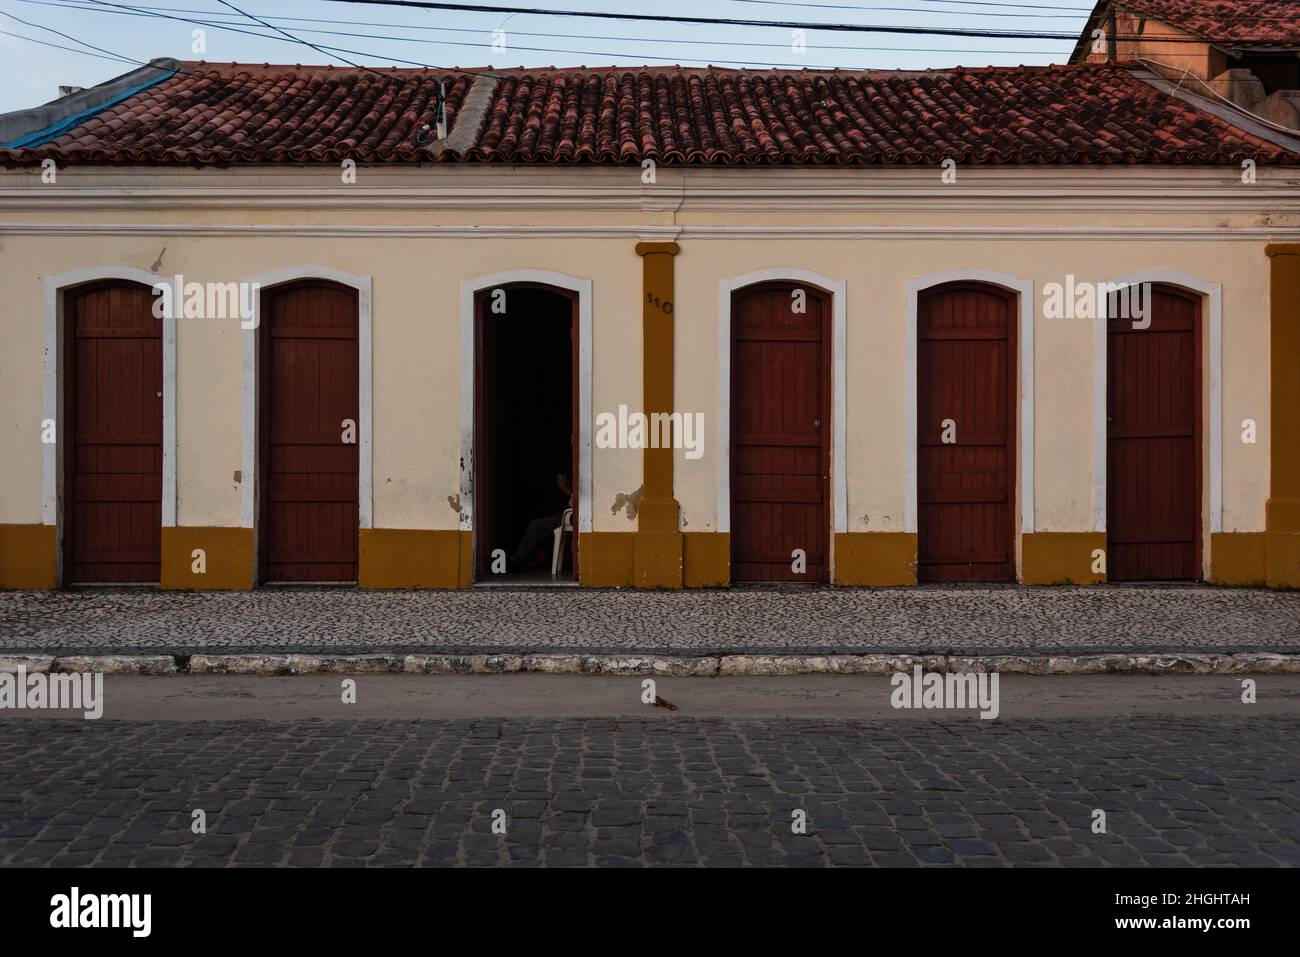 Edificio colonial portugués brasileño de color beige y marrón en el centro del Prado, Bahía, Brasil. Foto de stock